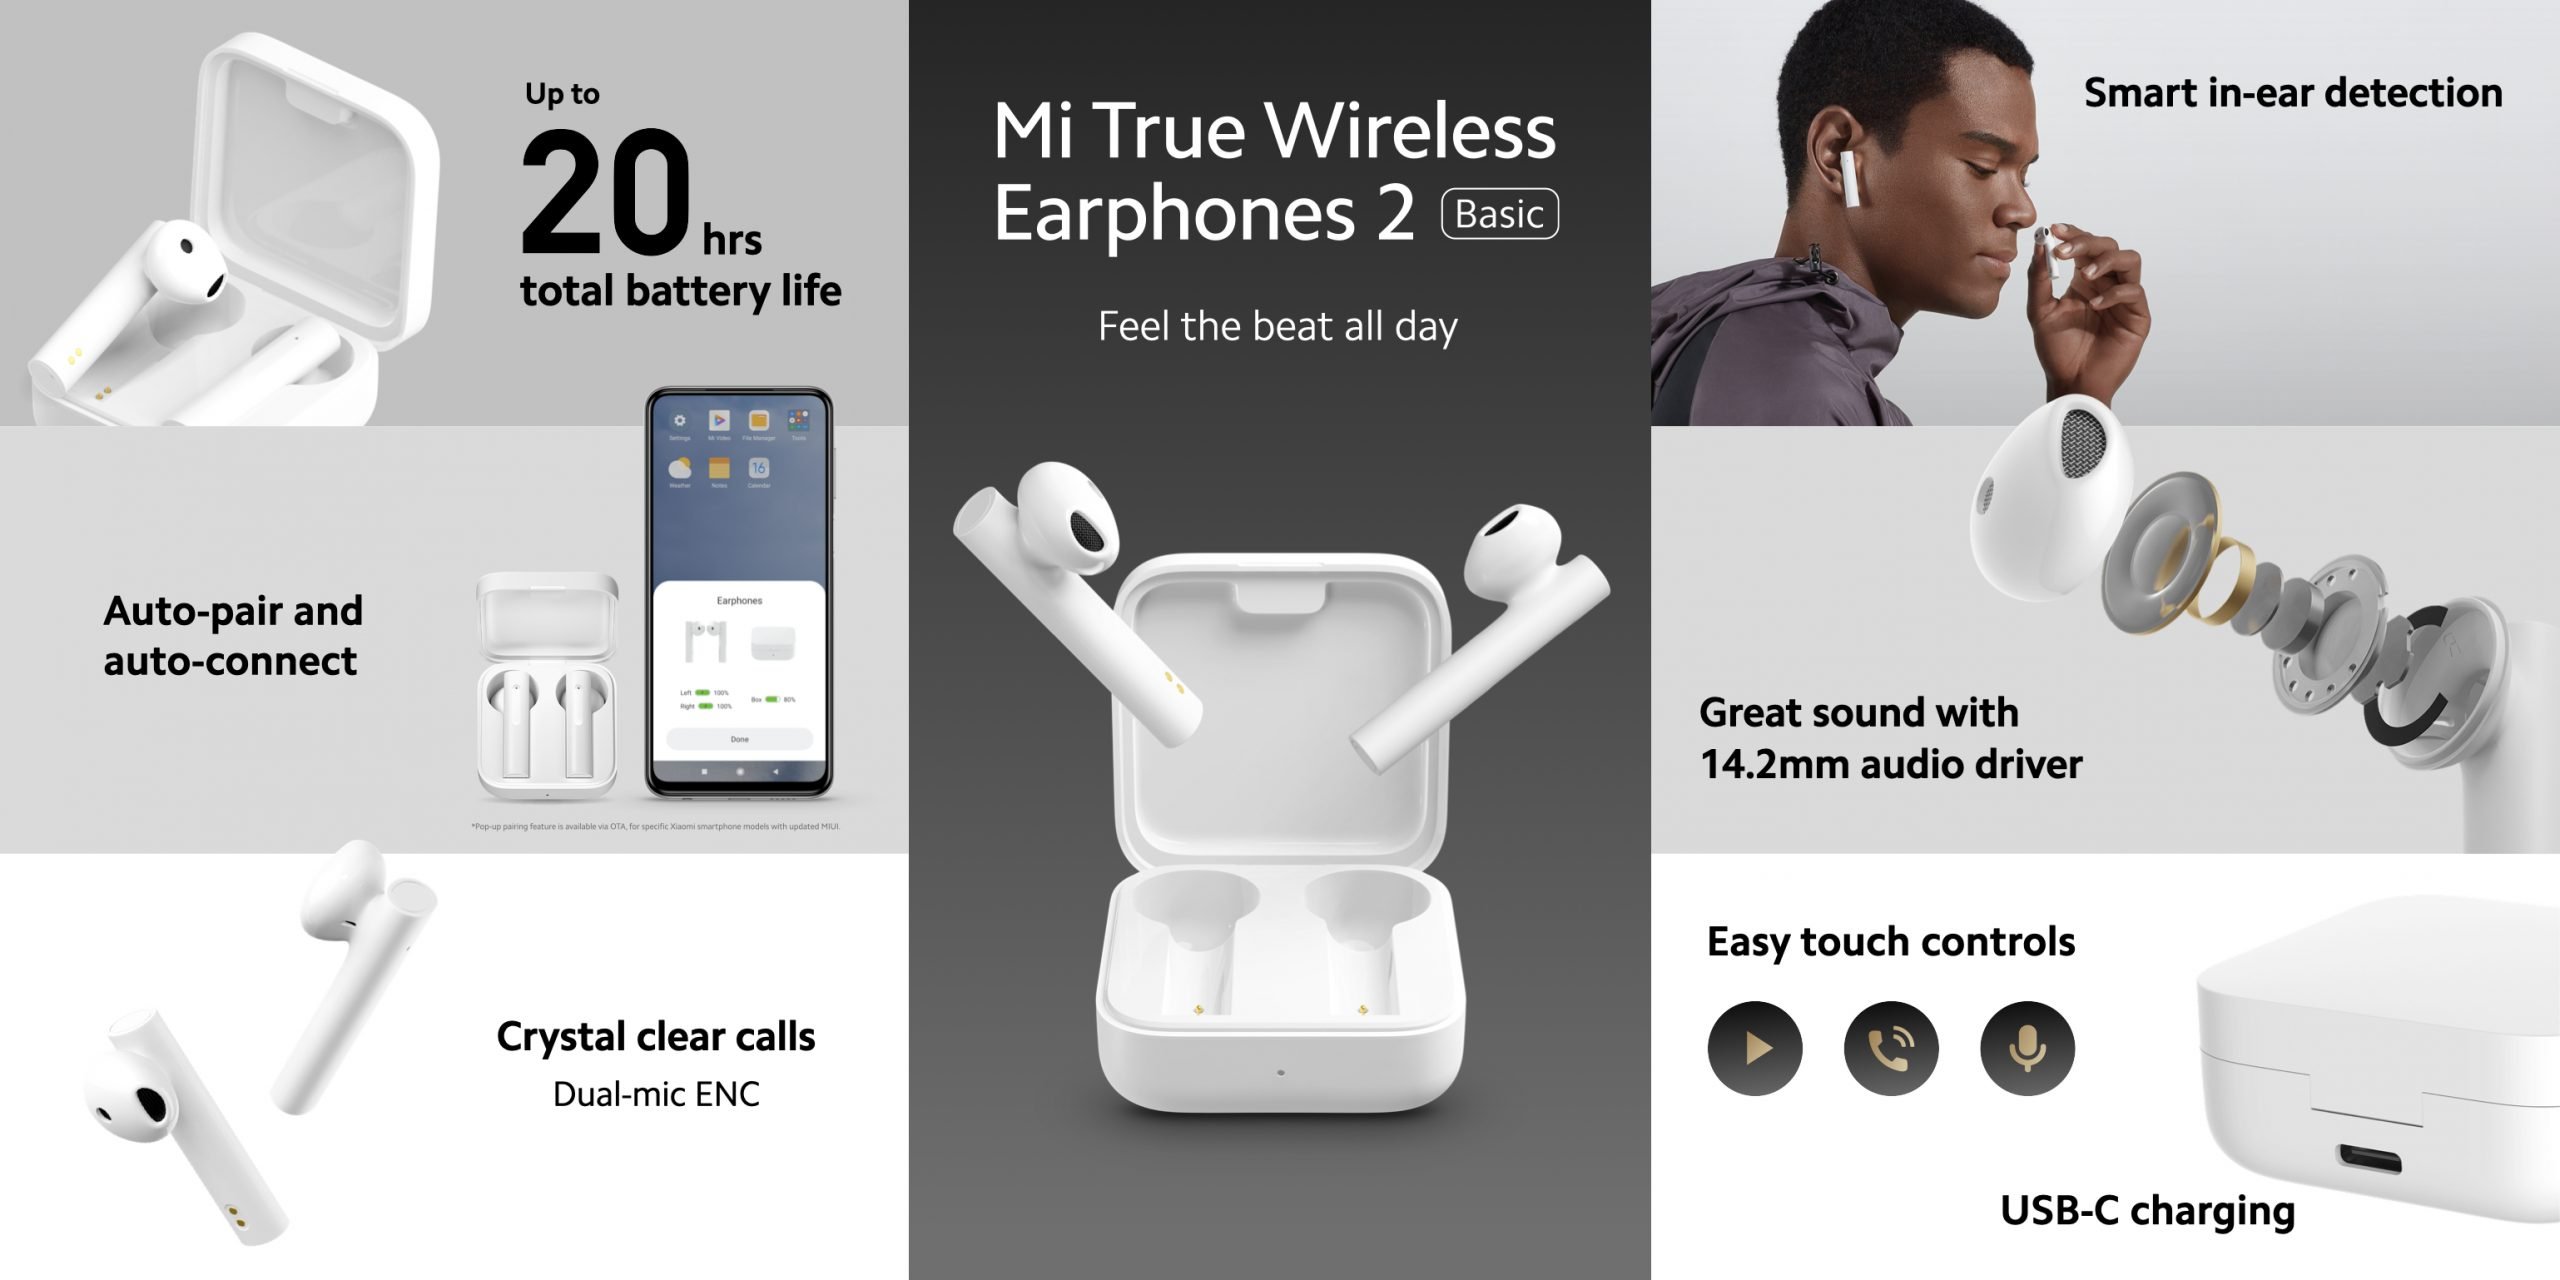 xiaomi-mi-true-wireless-earphones-2-basic-4-scaled.jpg